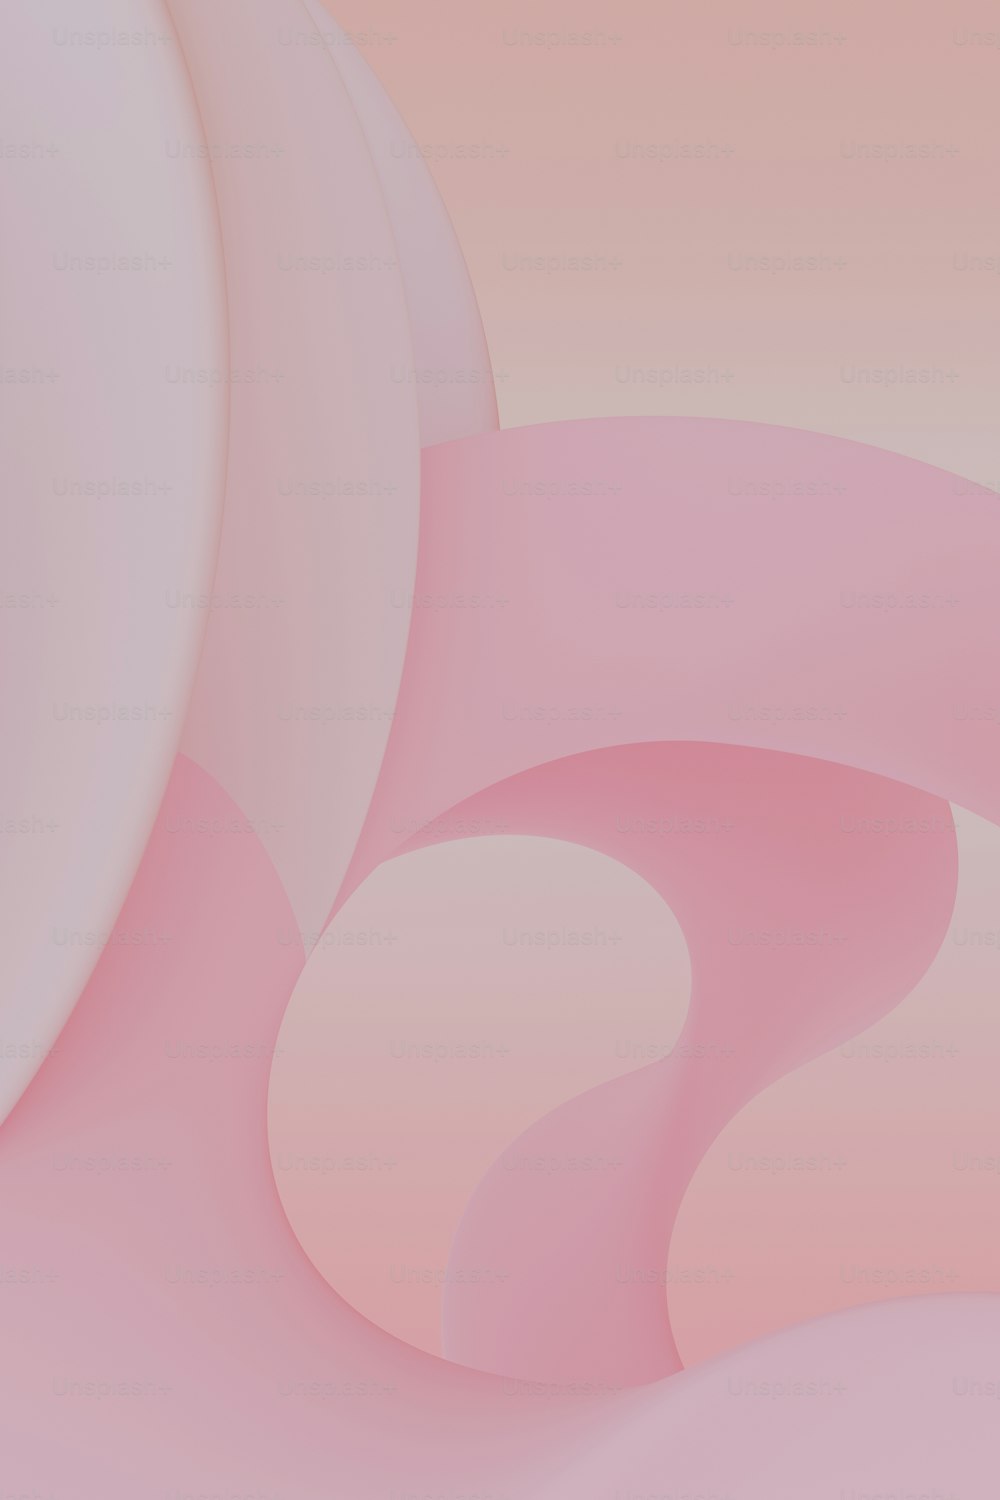 Un fondo abstracto rosa y blanco con formas curvas